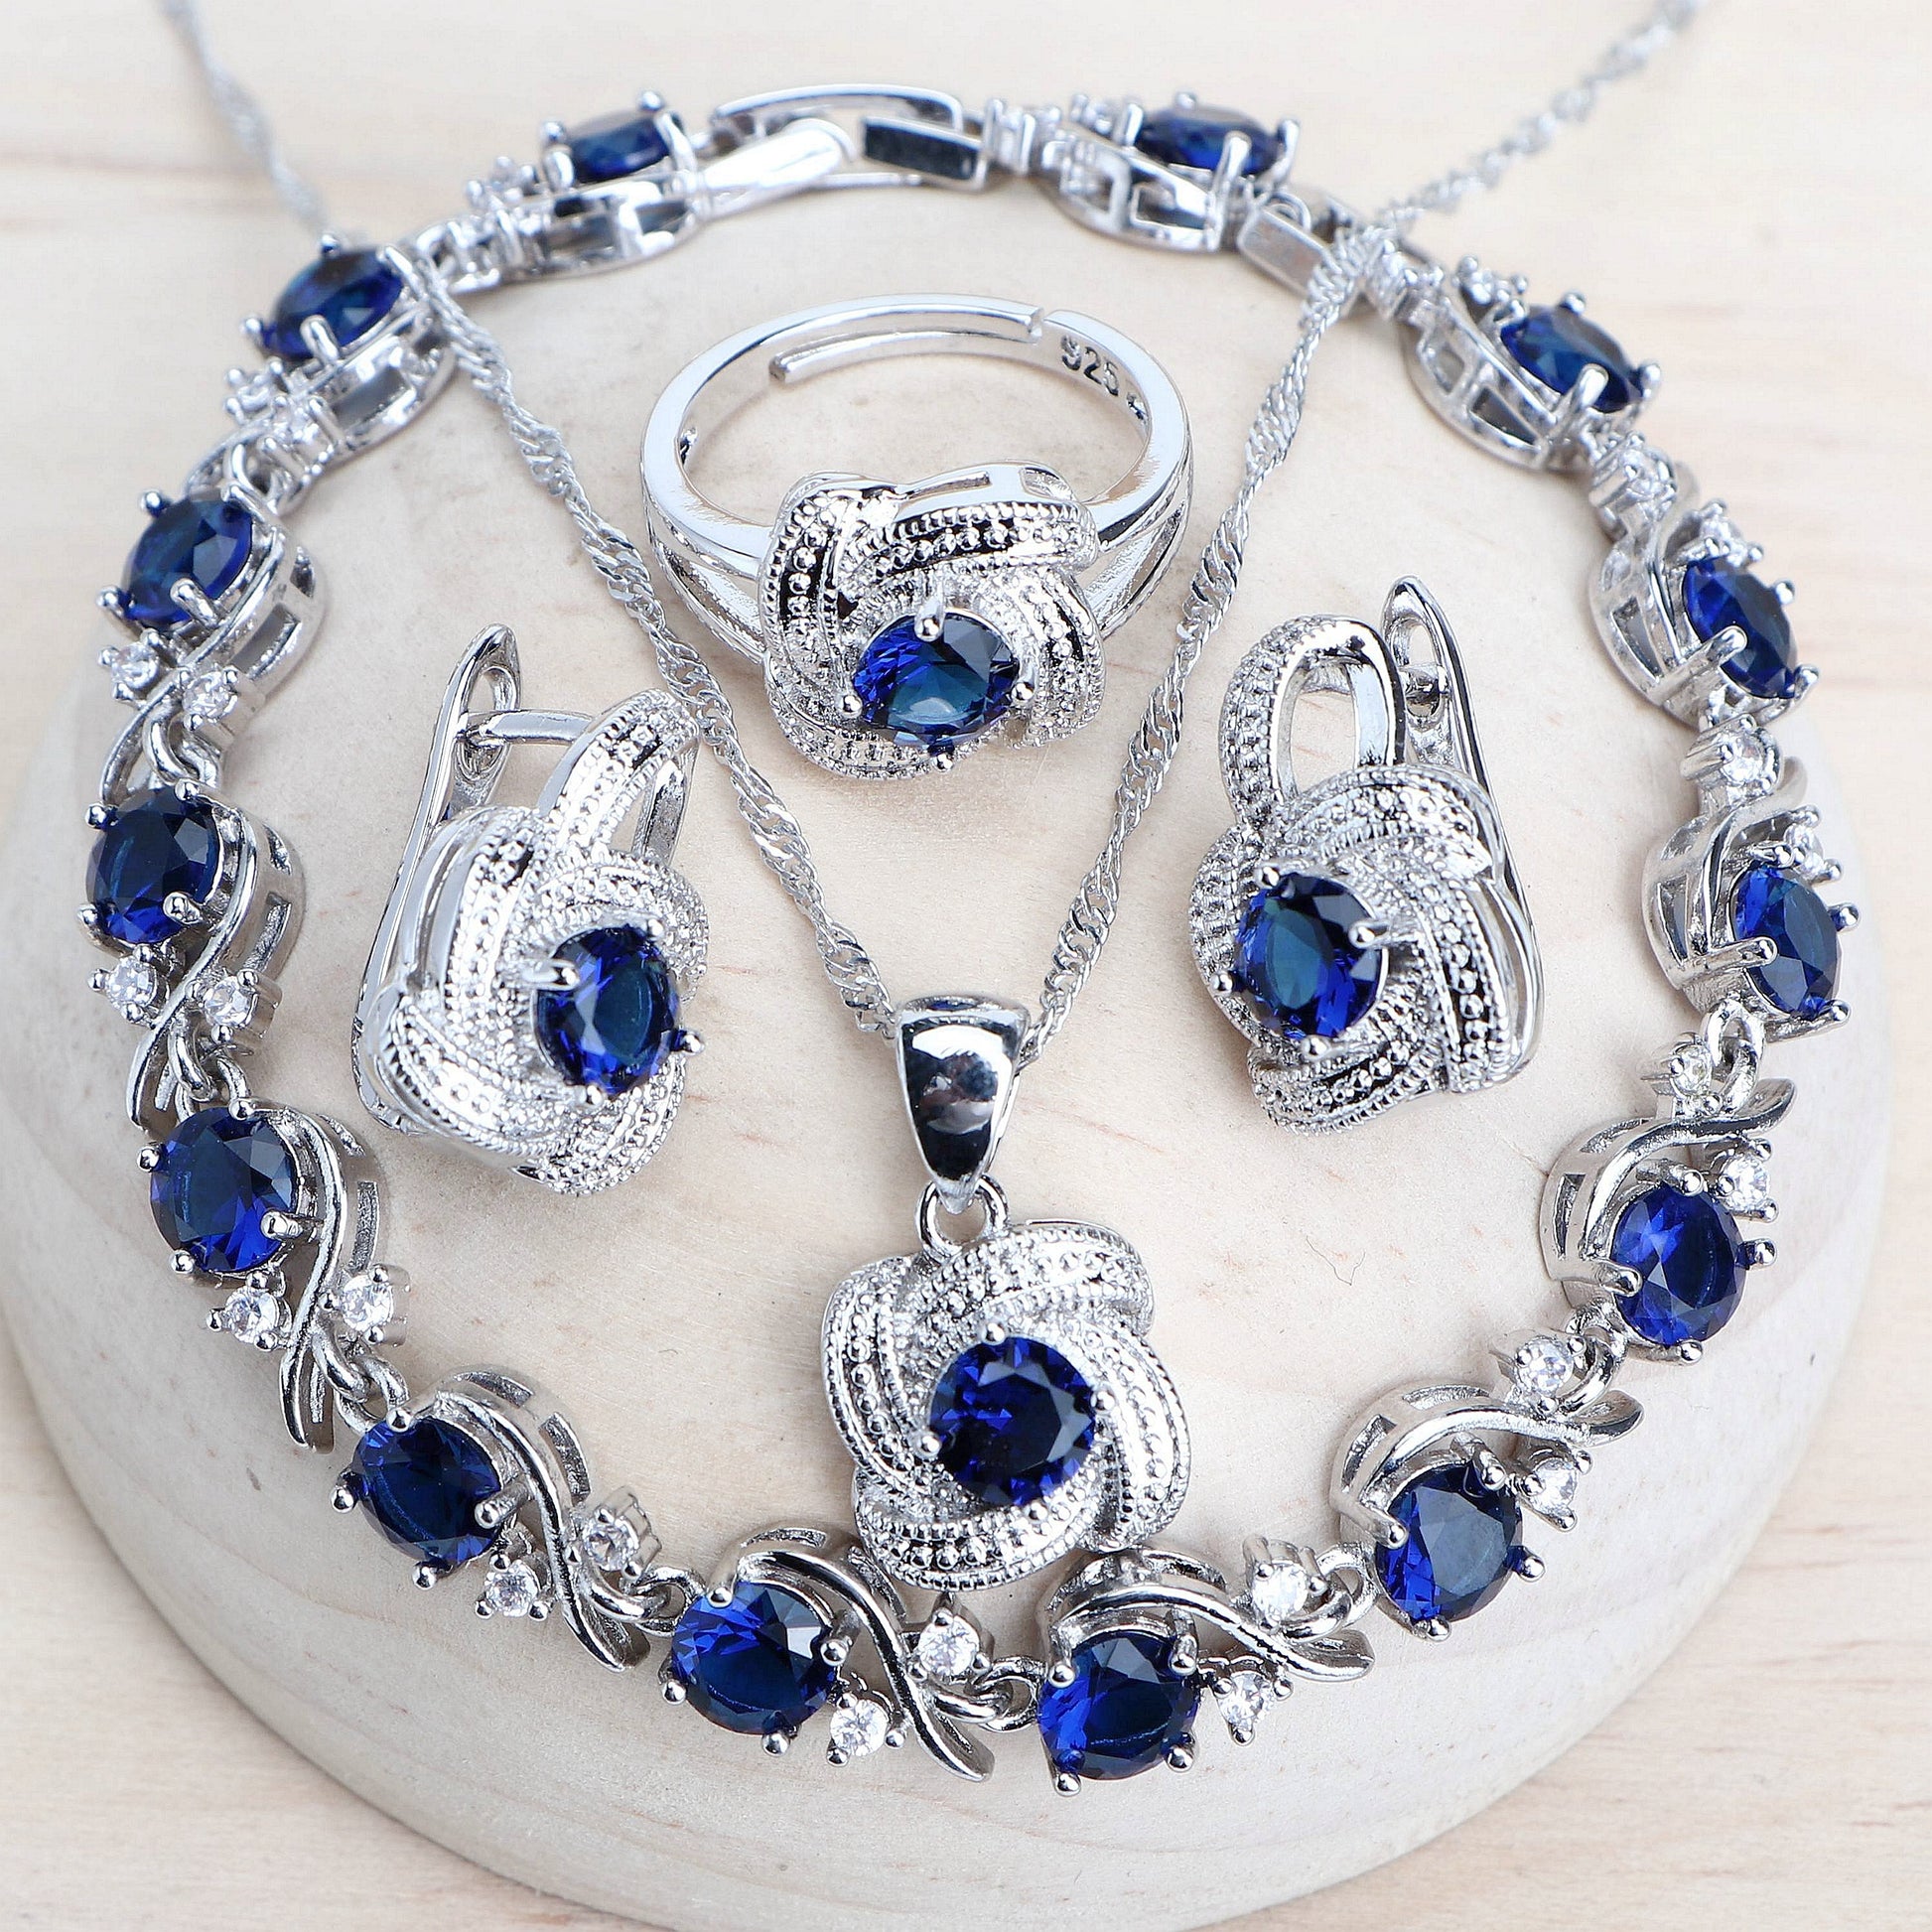 Blue Zirconia Women Jewelry Sets 925 Sterling Silver Wedding Bridal Costume Jewellery Earrings Rings Bracelets Pendant Necklace - Niki Ice Jewelry 